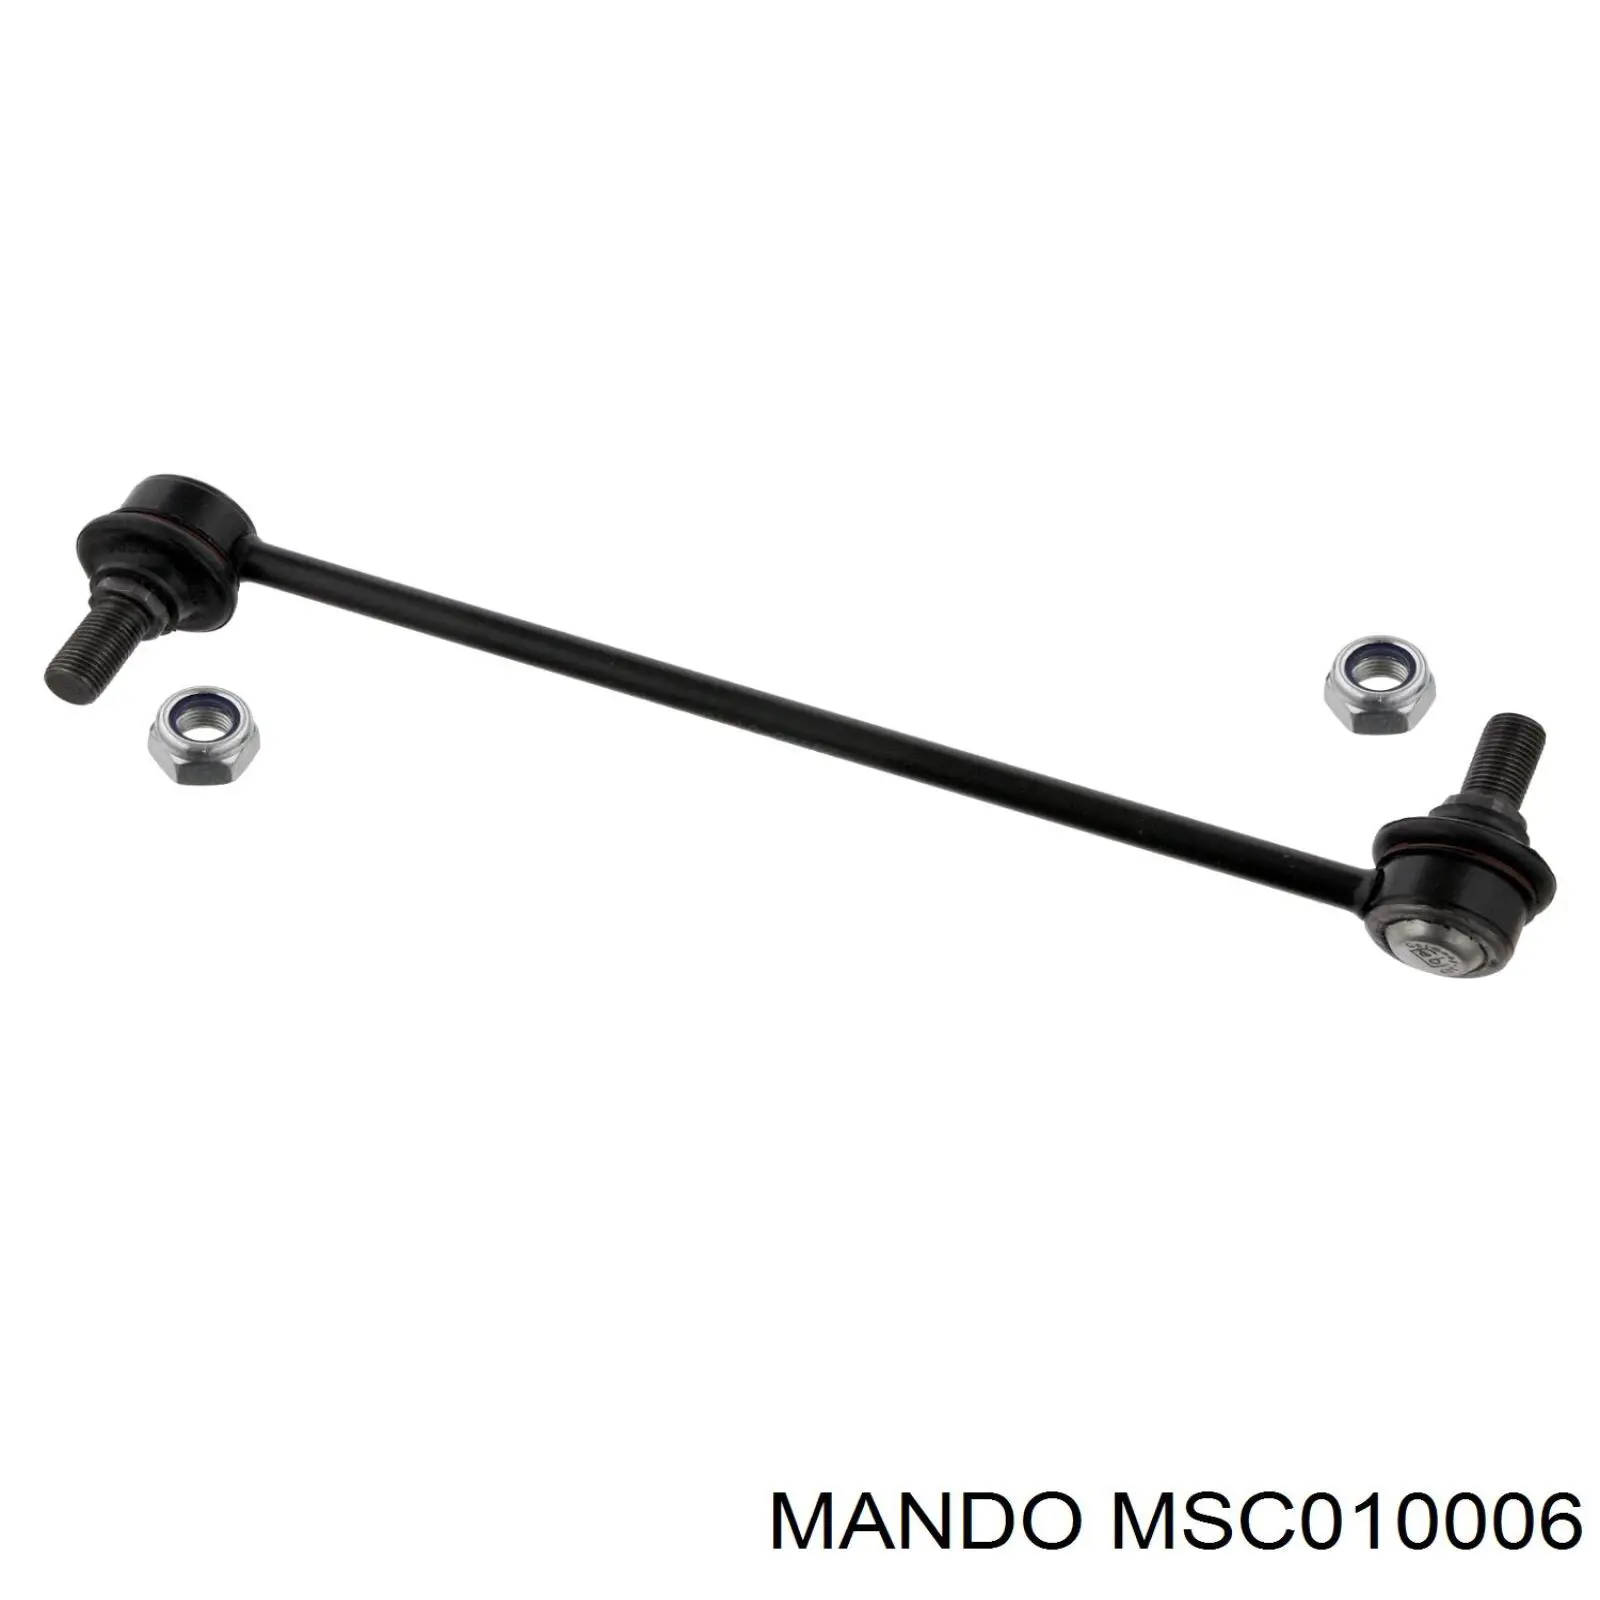 MSC010006 Mando стойка стабилизатора переднего правая